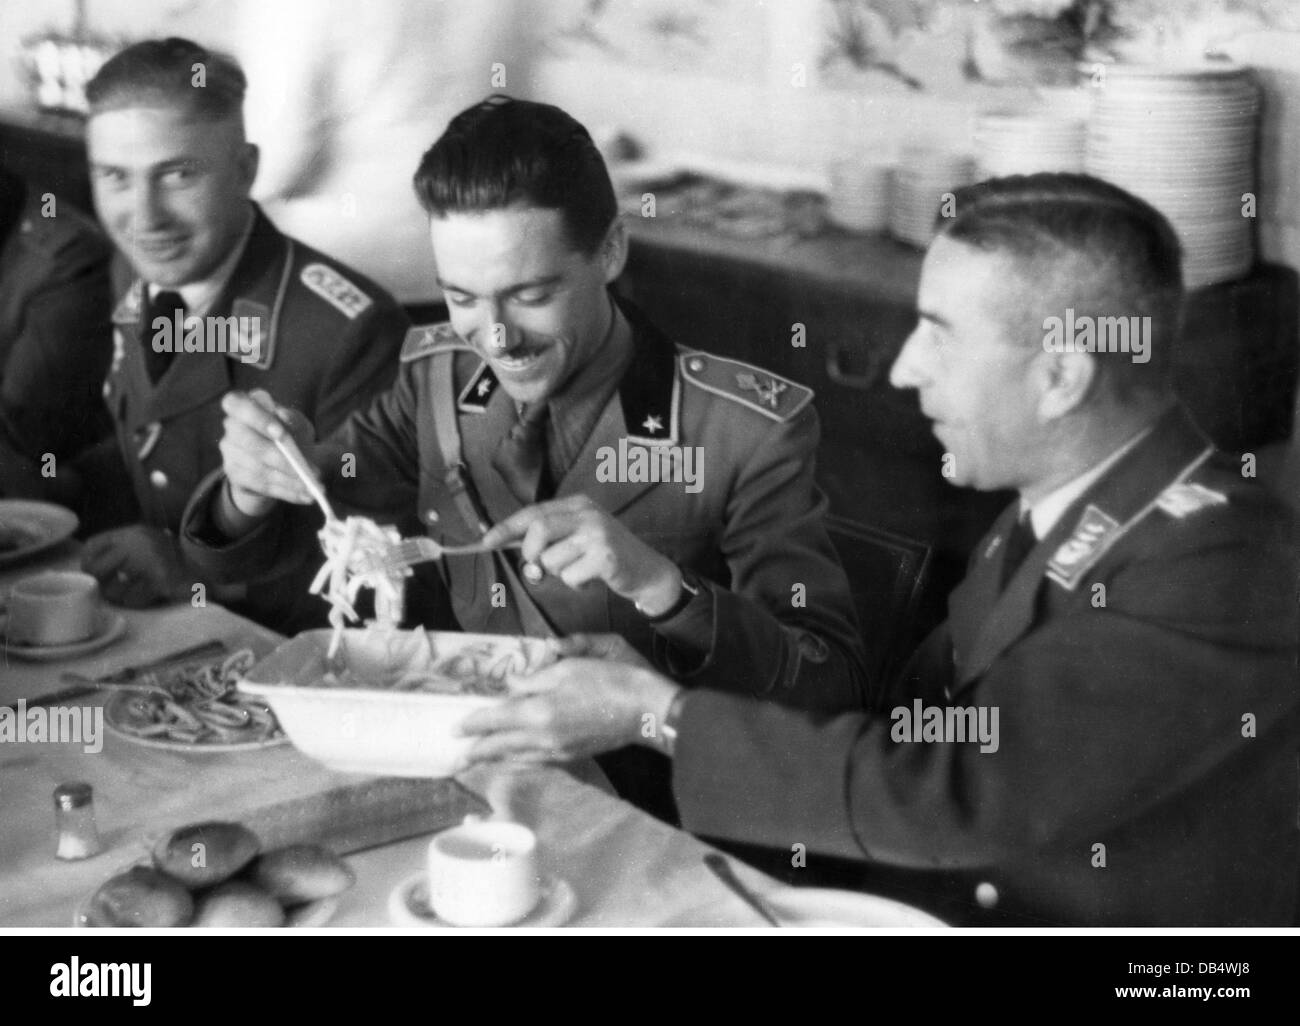 Nazisme / National socialisme, militaire, Wehrmacht, Luftwaffe, officier italien visitant une unité allemande de Luftwaffe, novembre 1941, déjeuner dans le mess des officiers, droits additionnels-Clearences-non disponible Banque D'Images